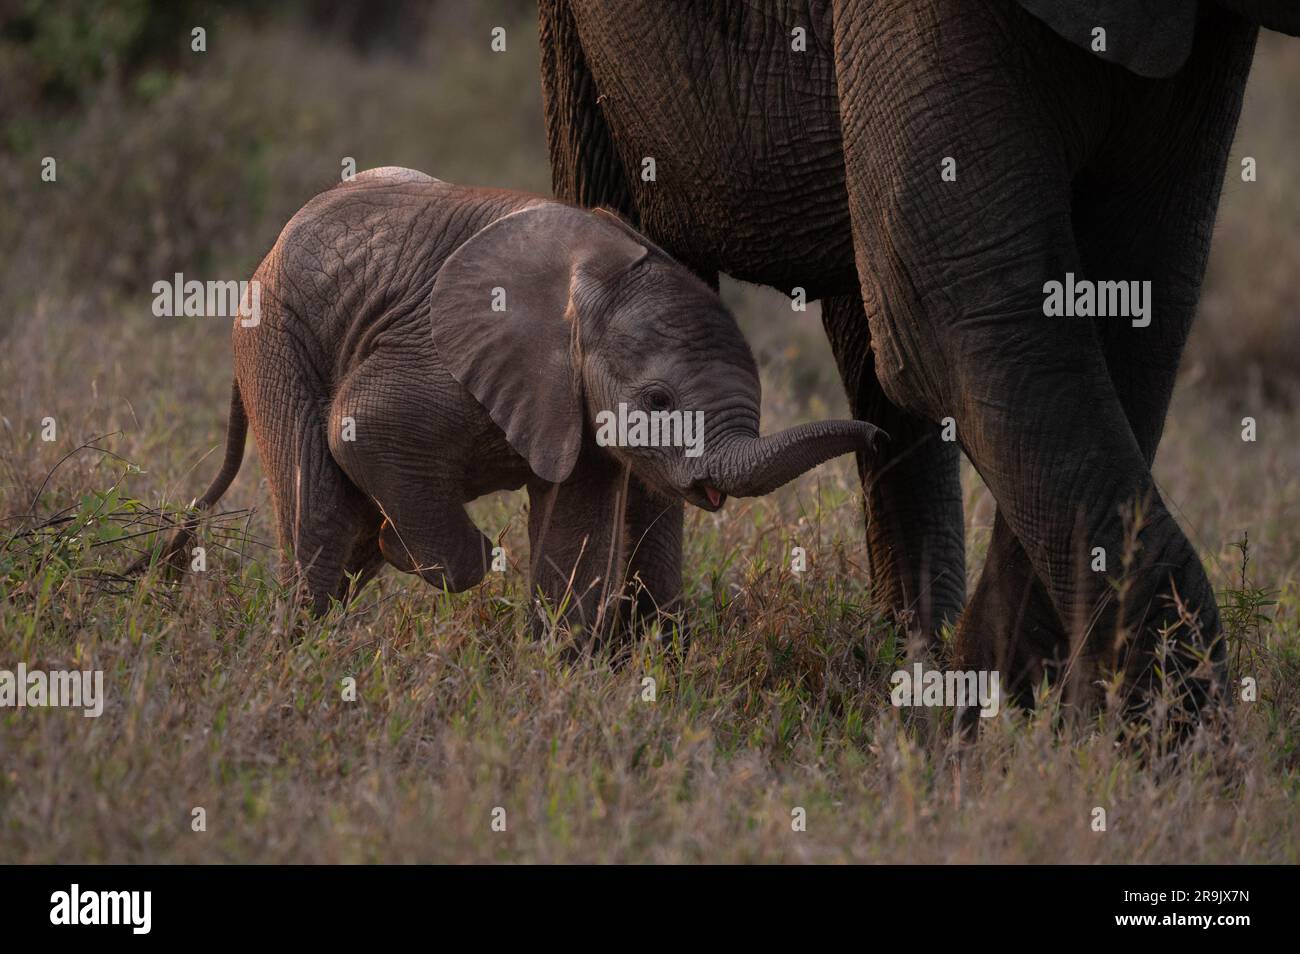 Un piccolo elefante, Loxodonta africana, che cammina accanto alle gambe delle madri. Foto Stock